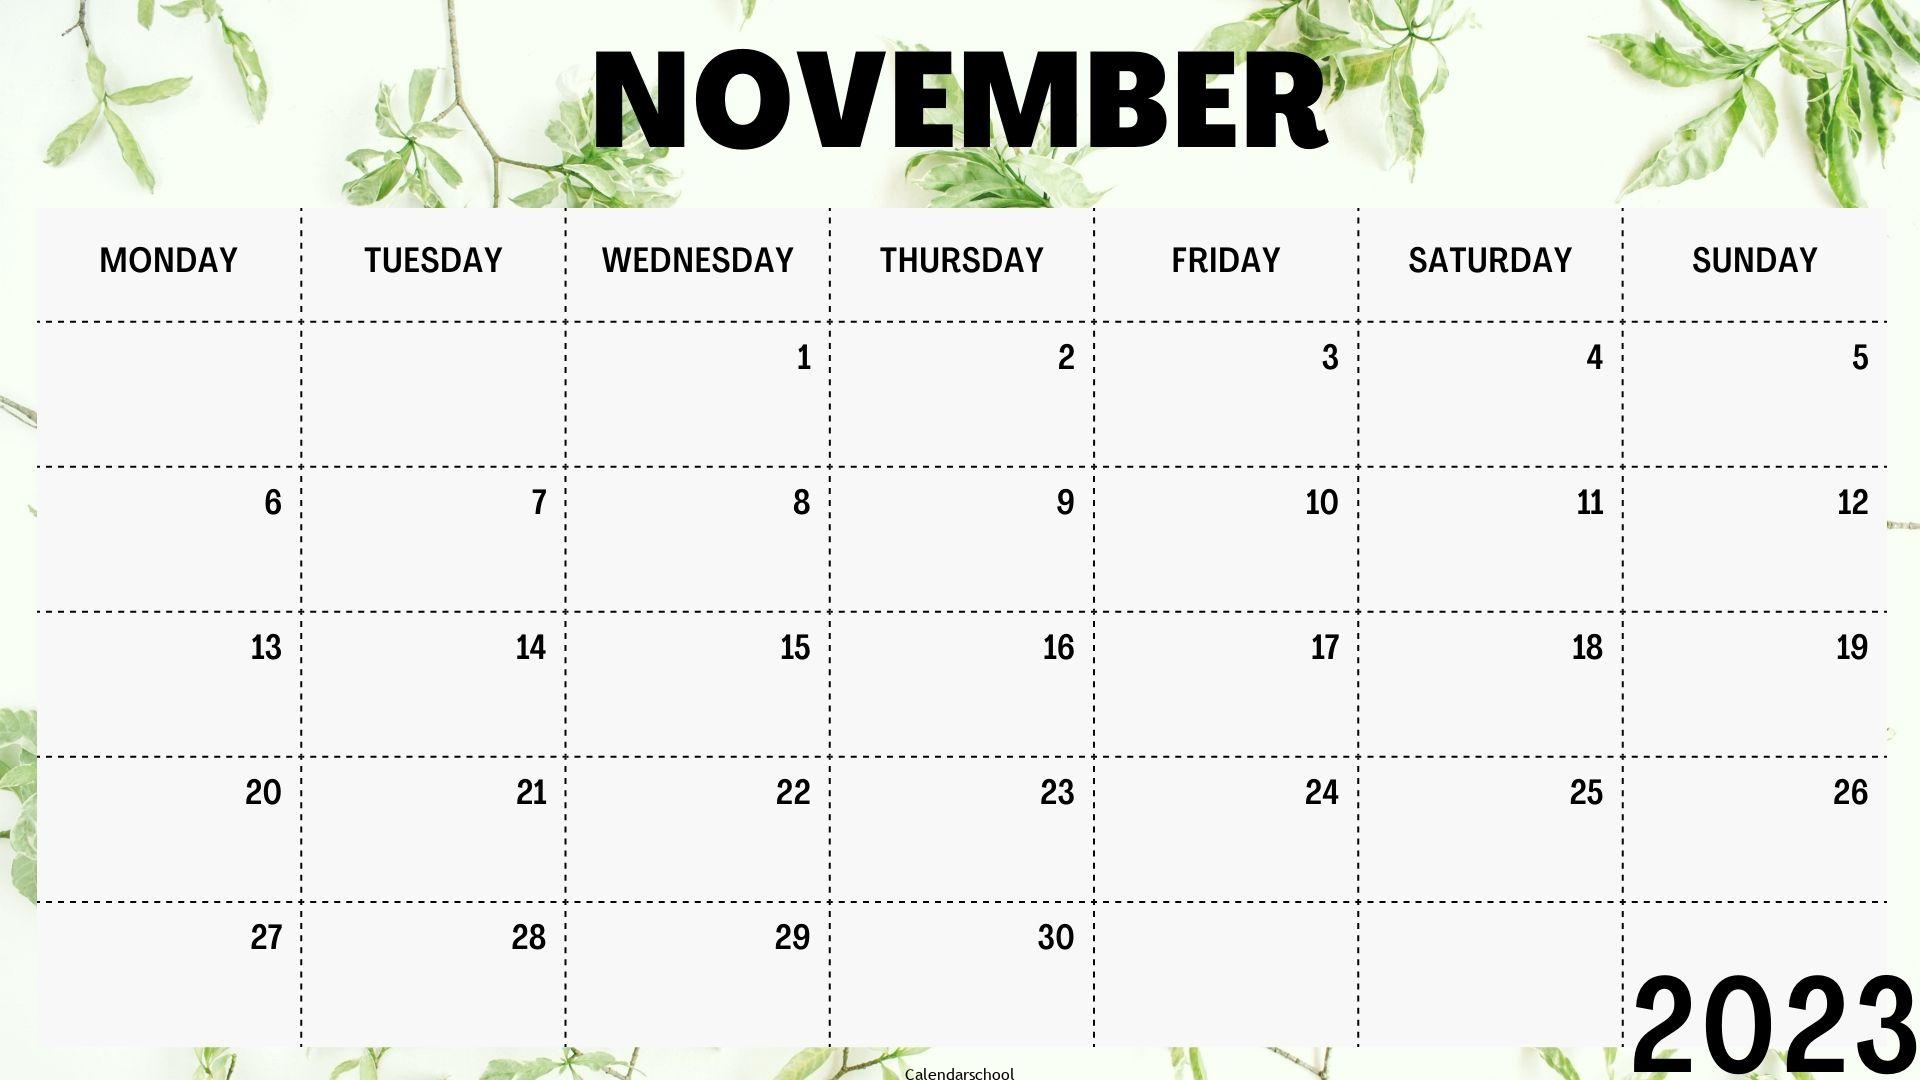 2023 November Calendar With Festivals